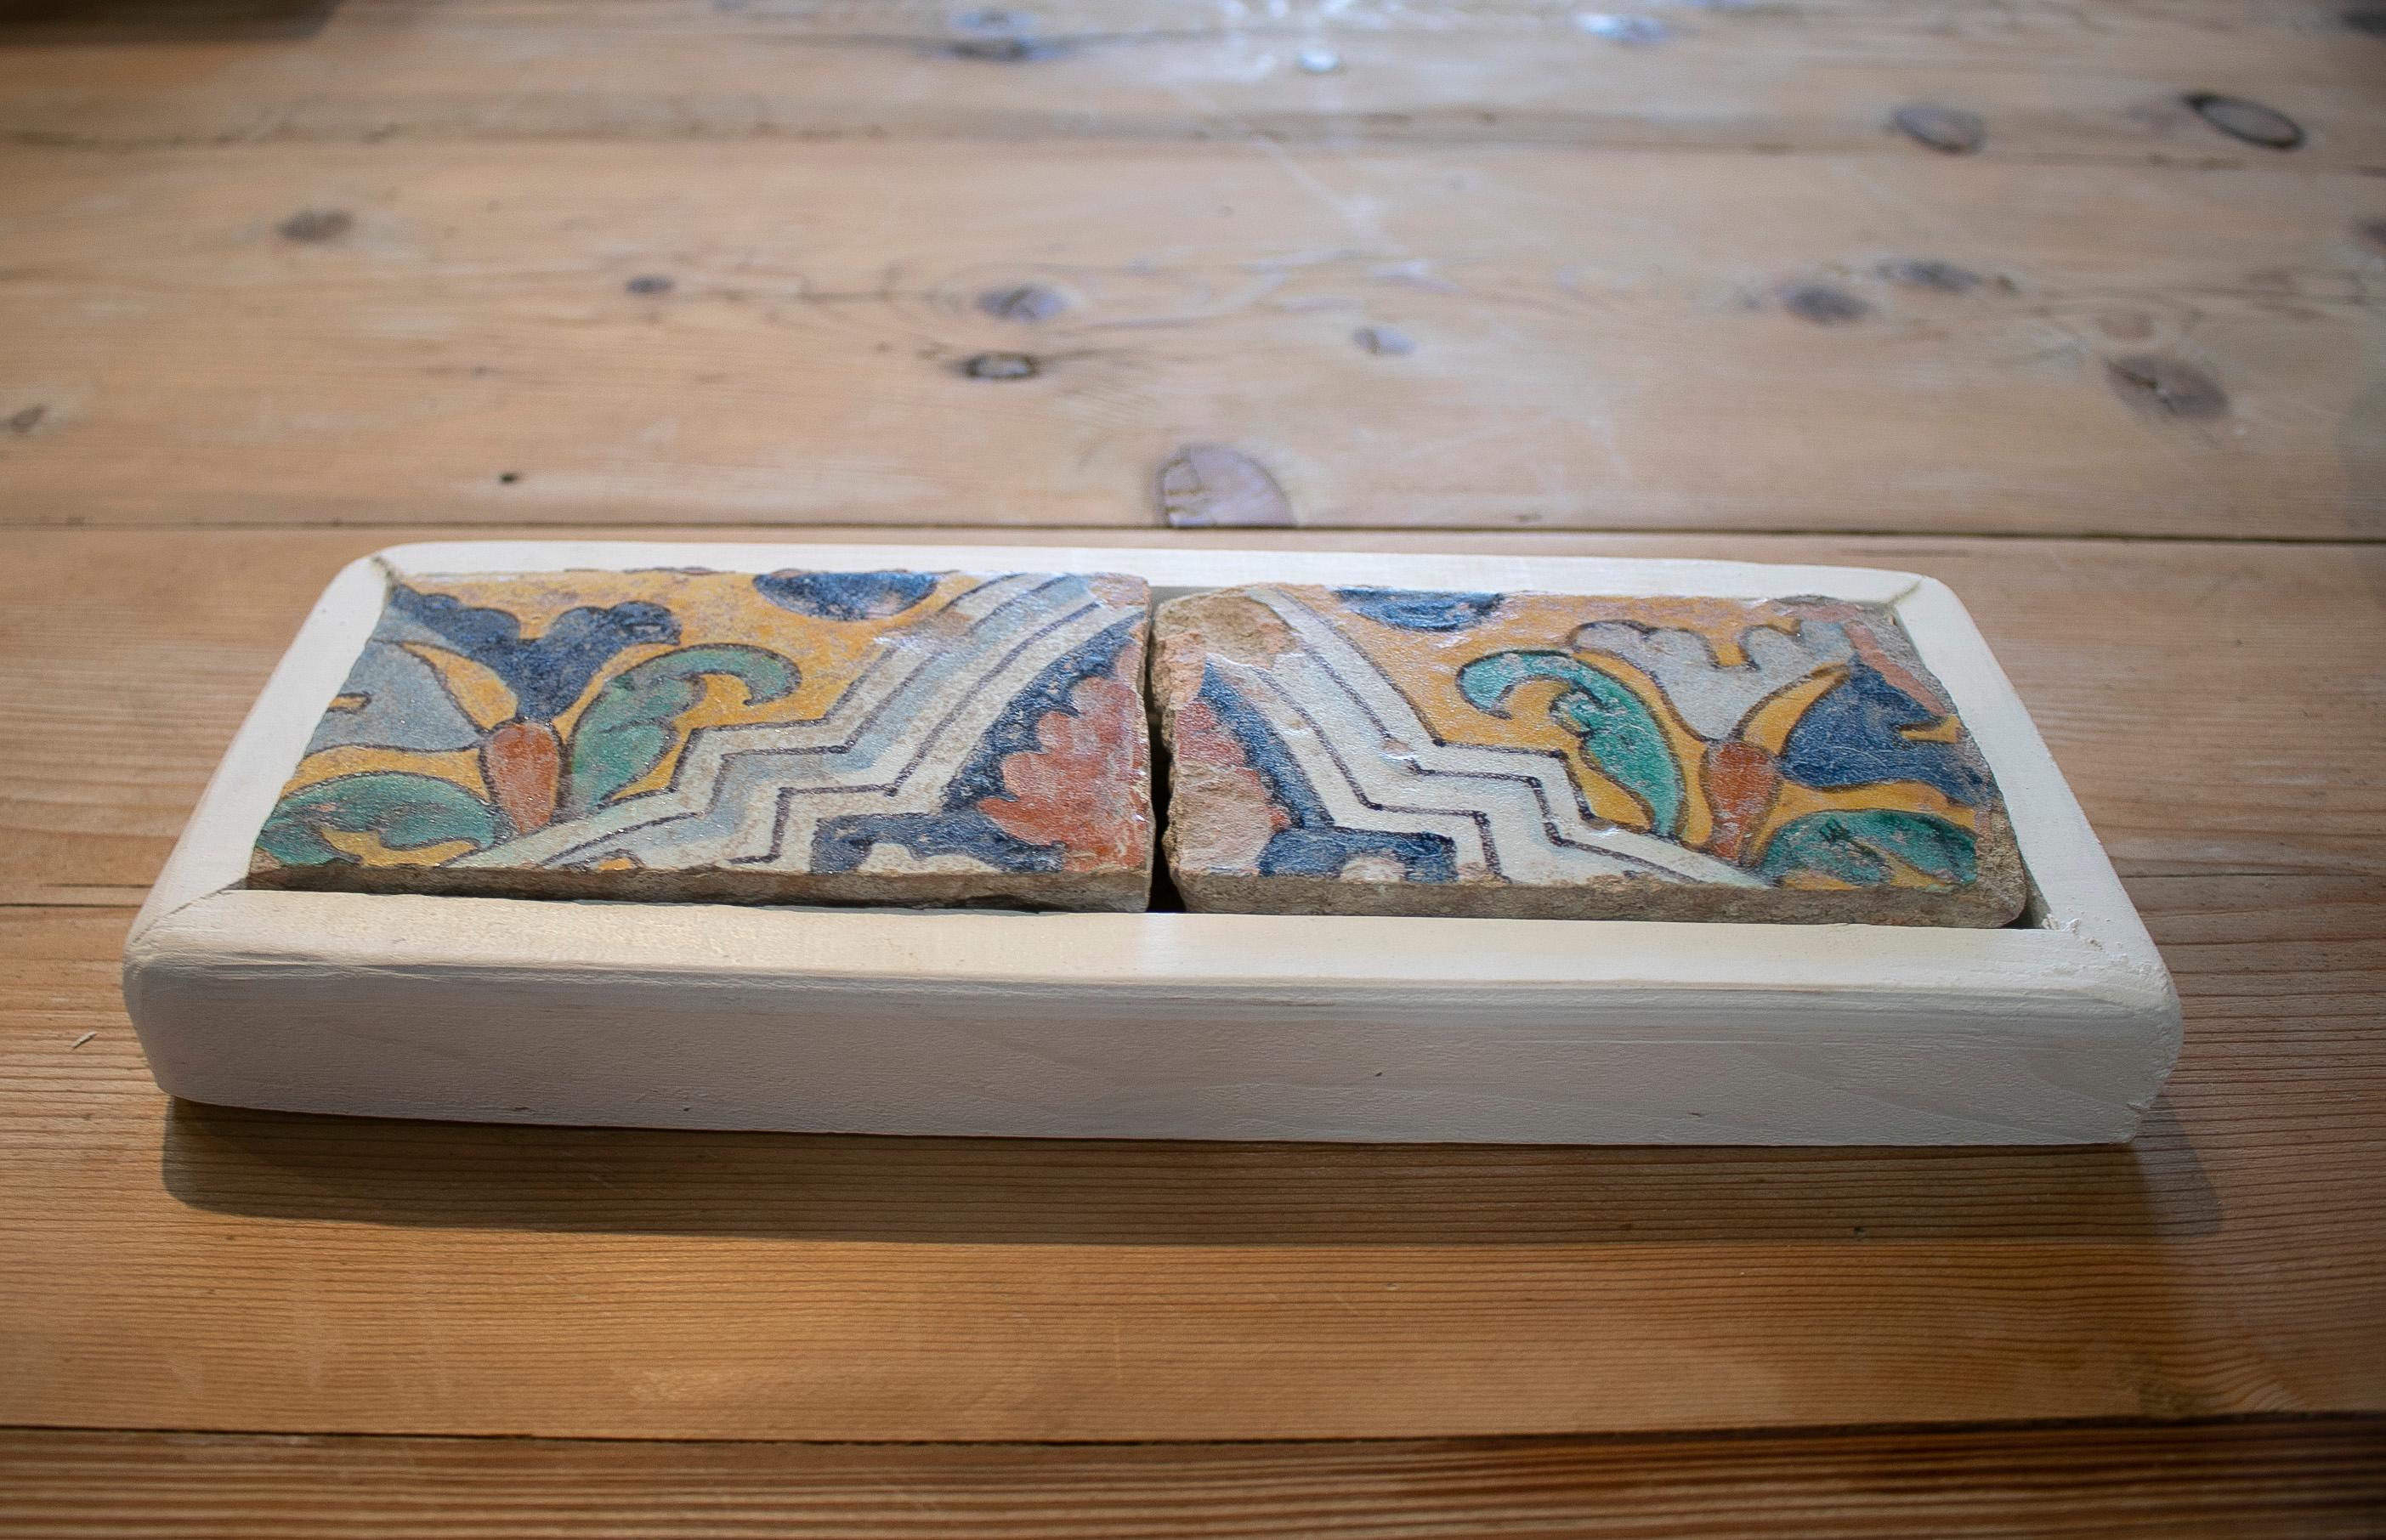 Ensemble antique de deux carreaux de céramique émaillée à motifs peints à la main en Espagne au 19e siècle, avec cadre blanc

Les dimensions ne comprennent pas le cadre.